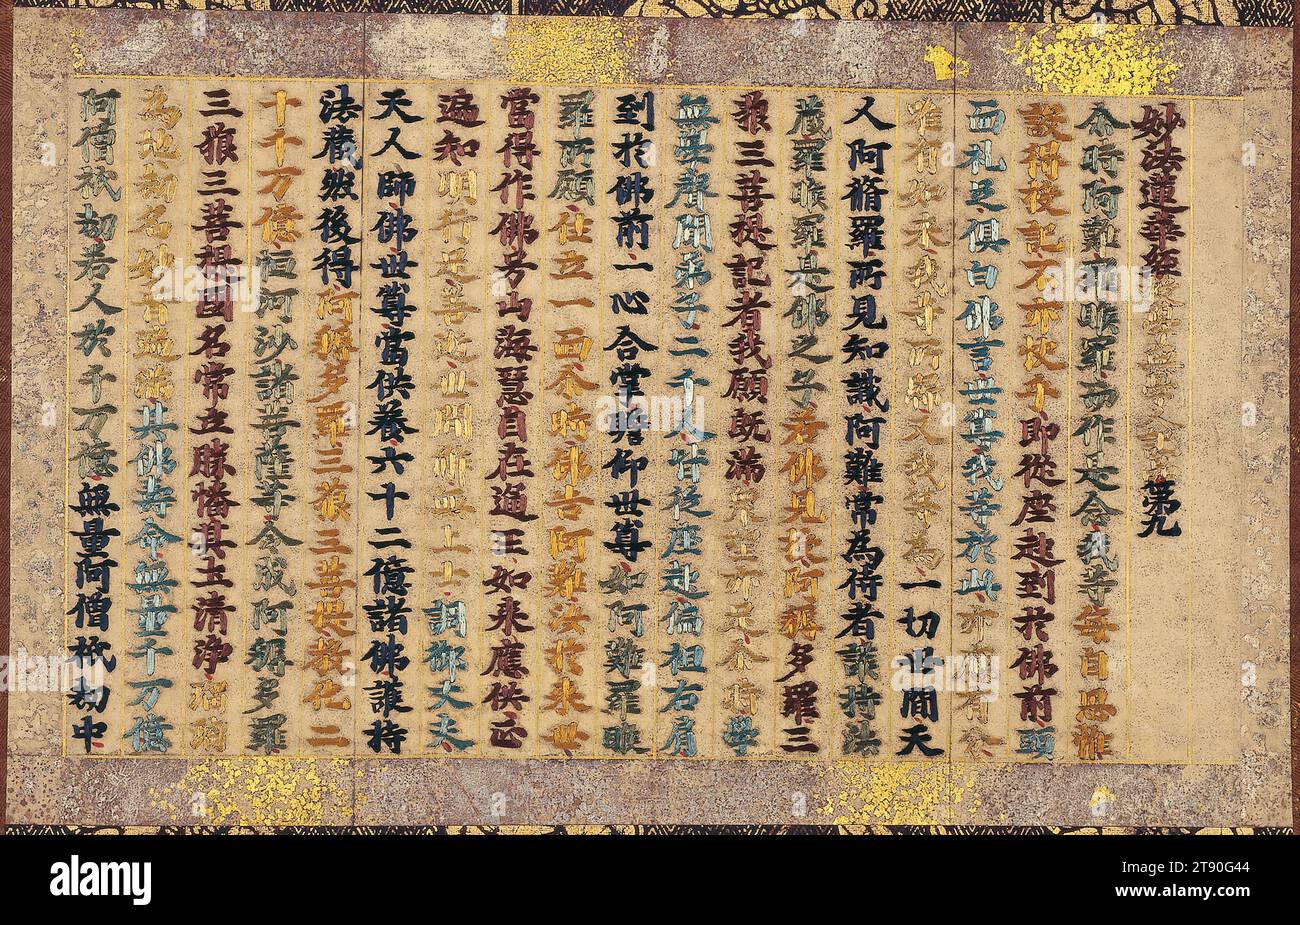 Kapitel 9 des Lotus Sutra, Anfang des 14. Jahrhunderts, Unbekanntes Japanisch, 9 x 15 3/4 cm. (22,86 x 40,01 cm) (Bild)43 x 22 1/2 Zoll (109,22 x 57,15 cm) (Halterung, ohne Rolle), Seide auf Papier gestickt, Japan, 14. Jahrhundert, lehrt das Lotus Sutra, dass Erlösung für alle Lebewesen erreichbar ist und sagt ausdrücklich, dass Frauen auch buddhas werden können. Diese unkomplizierte Lehre machte sie zu einer der einflussreichsten buddhistischen Schriften und zu einer besonders populären, vor allem bei Frauen. Über die frühe Herstellung von gestickten buddhistischen Sutras wie diesem ist nur sehr wenig bekannt. Stockfoto